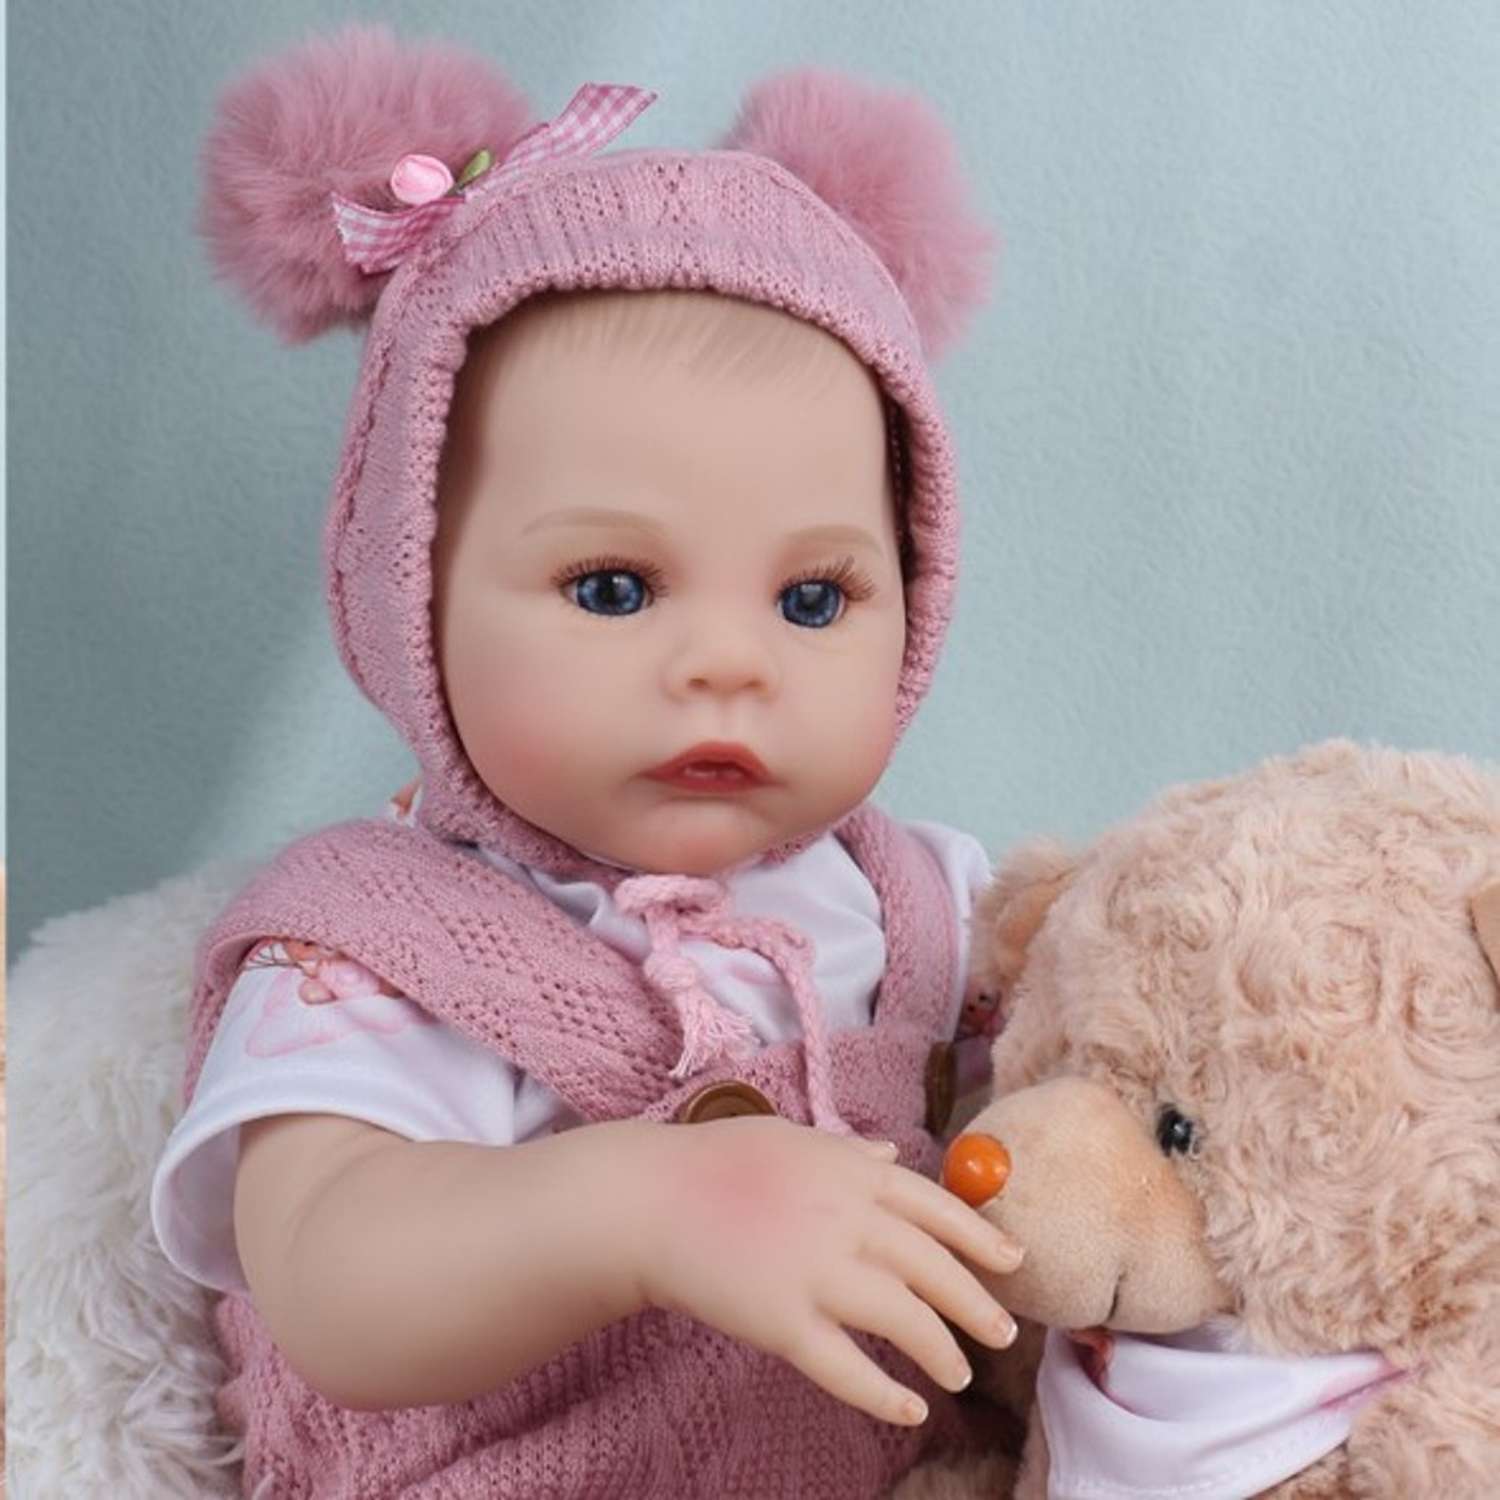 Кукла Реборн QA BABY Анна пупс с соской набор игрушки для девочки 45 см 42003 - фото 13